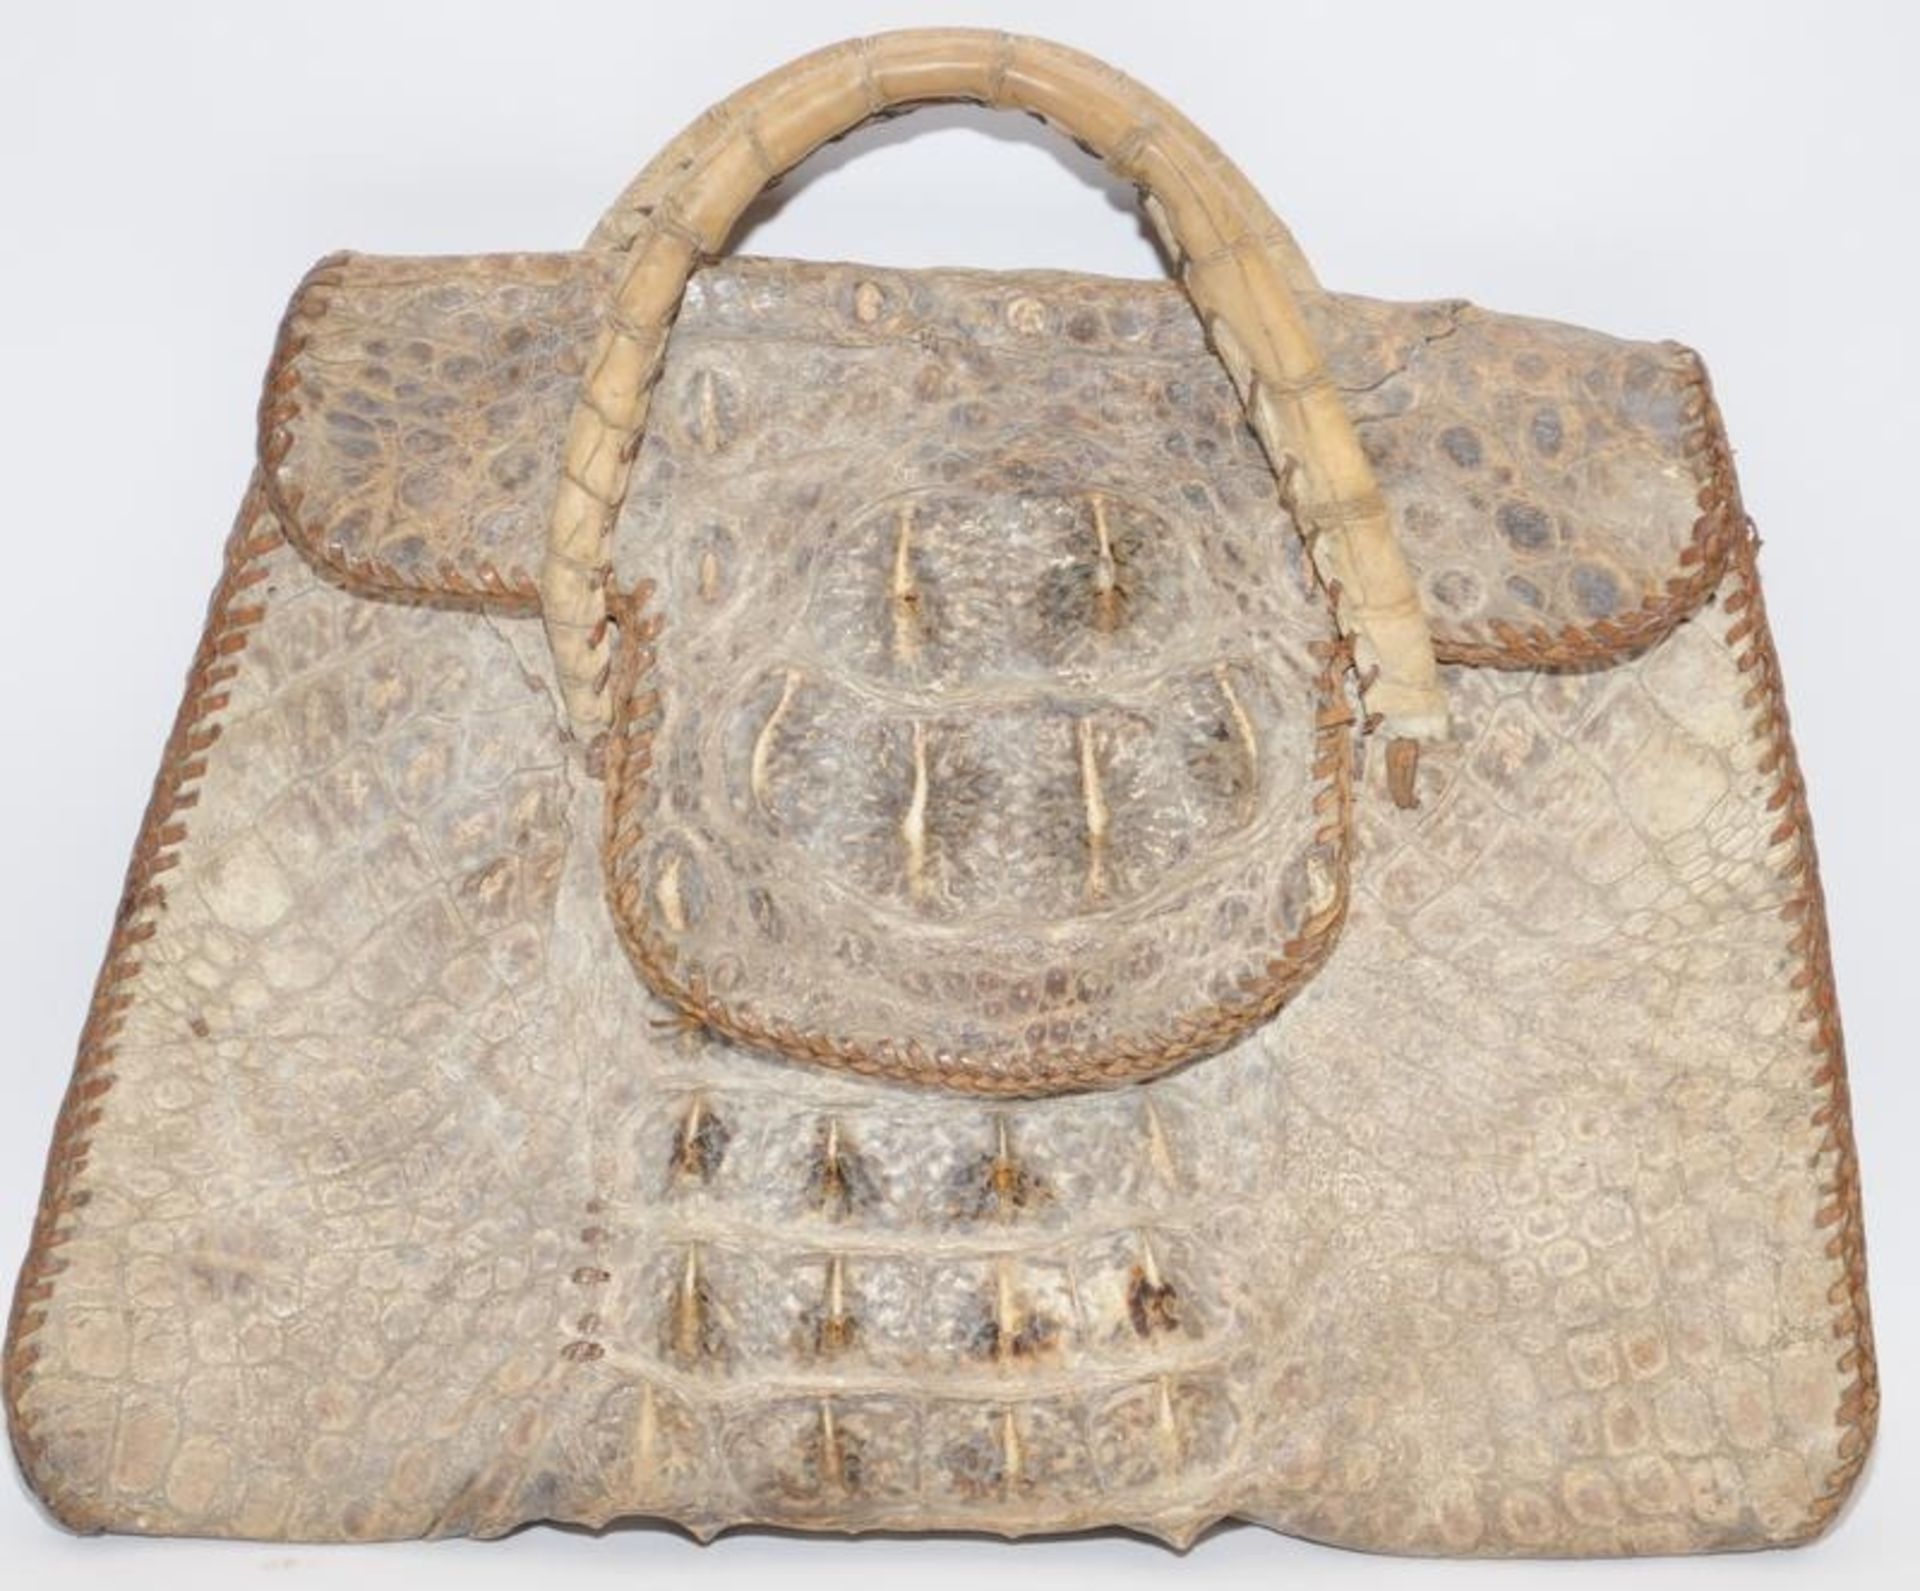 Vintage real alligator skin handbag. 30cms across at widest point